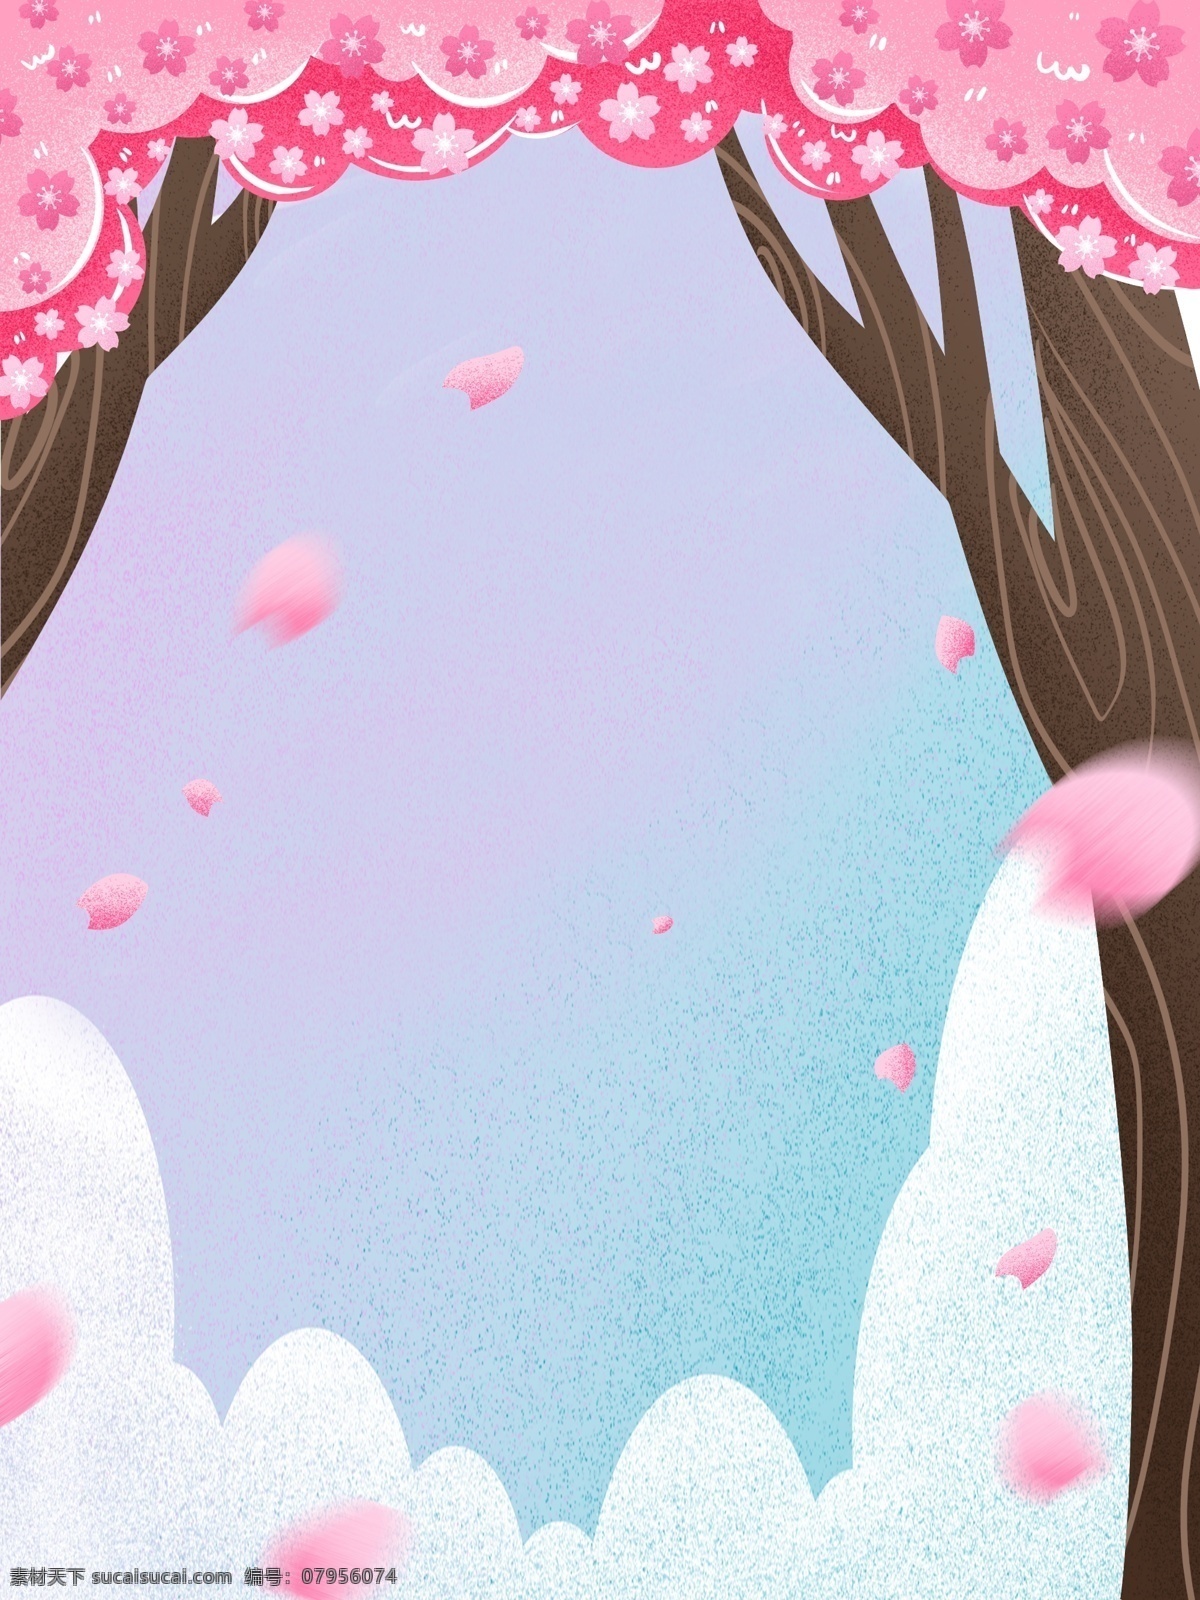 浪漫 三月 你好 樱花树 插画 背景 广告背景 手绘背景 卡通背景 花瓣背景 浪漫三月